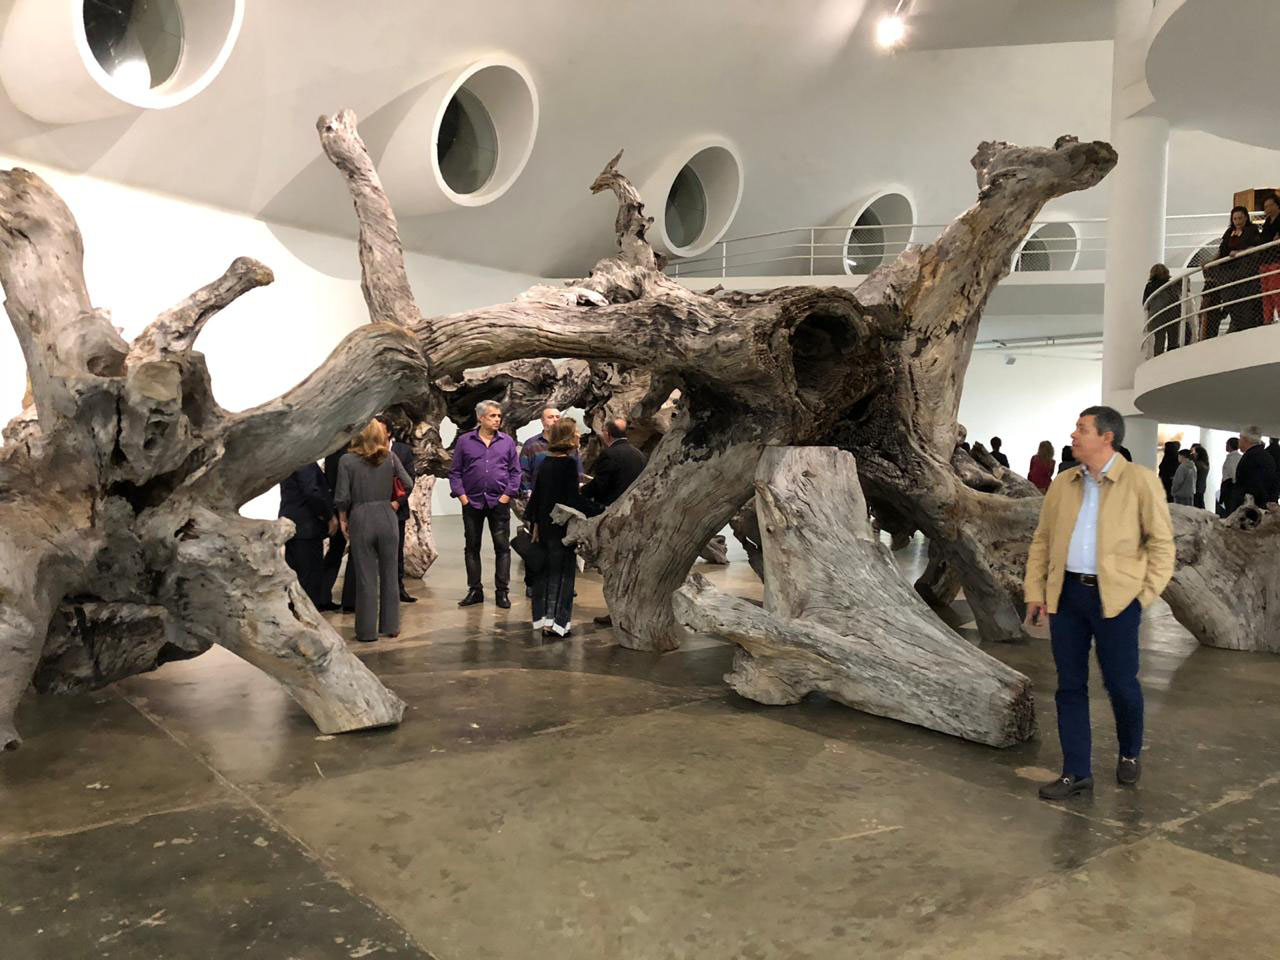 Artista chinês Ai WeiWei estreia maior exposição de sua carreira em São Paulo; mostra contou com a ajuda de artesãos cearenses